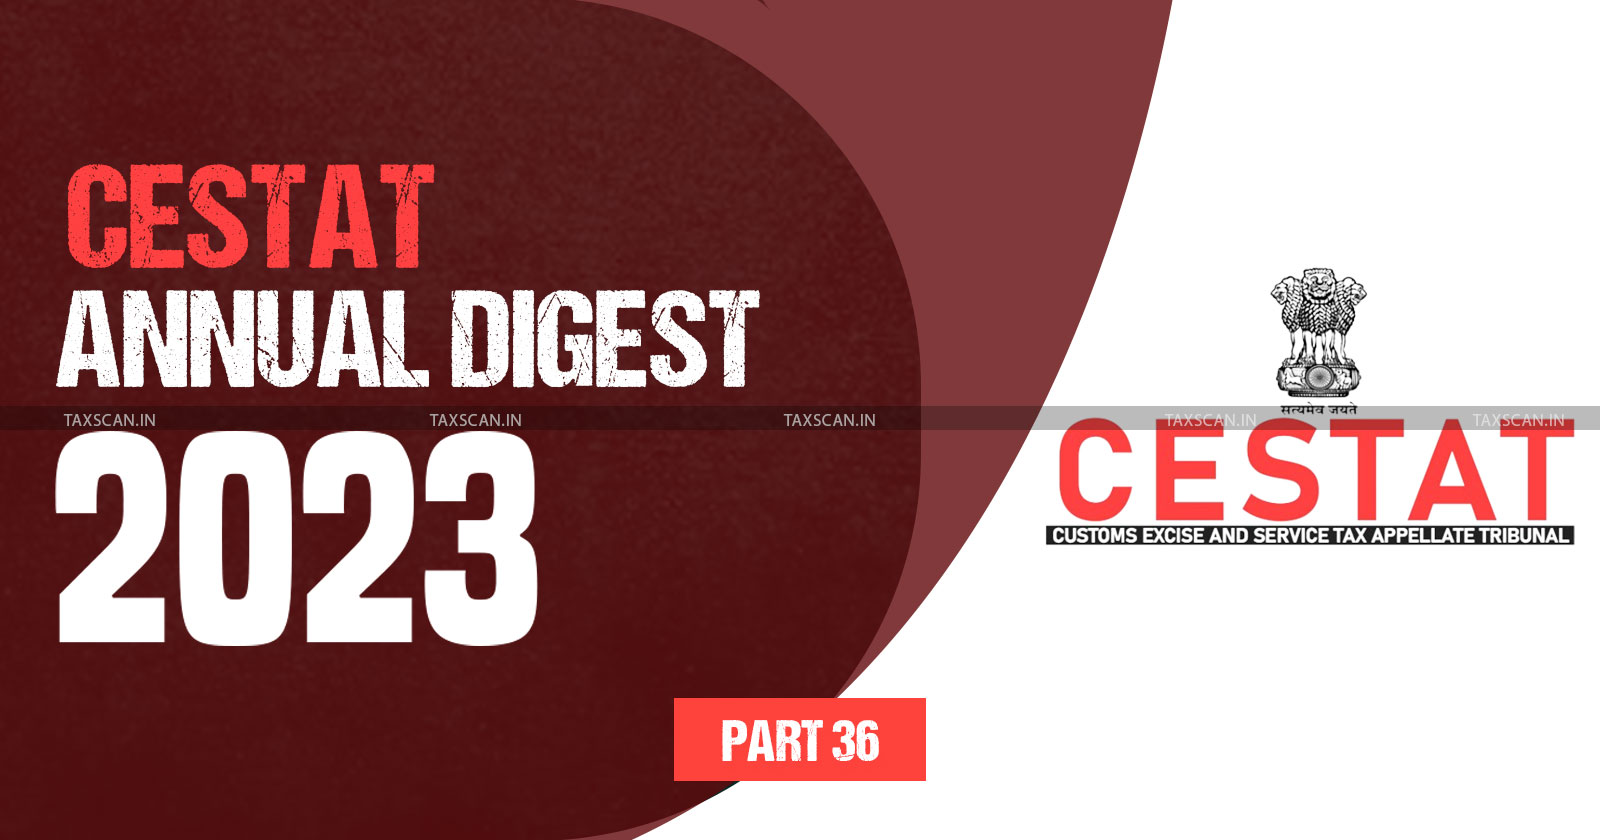 Annual Digest 2023 - CESTAT Annual Digest 2023 - cestat -Part 36 - TAXSCAN